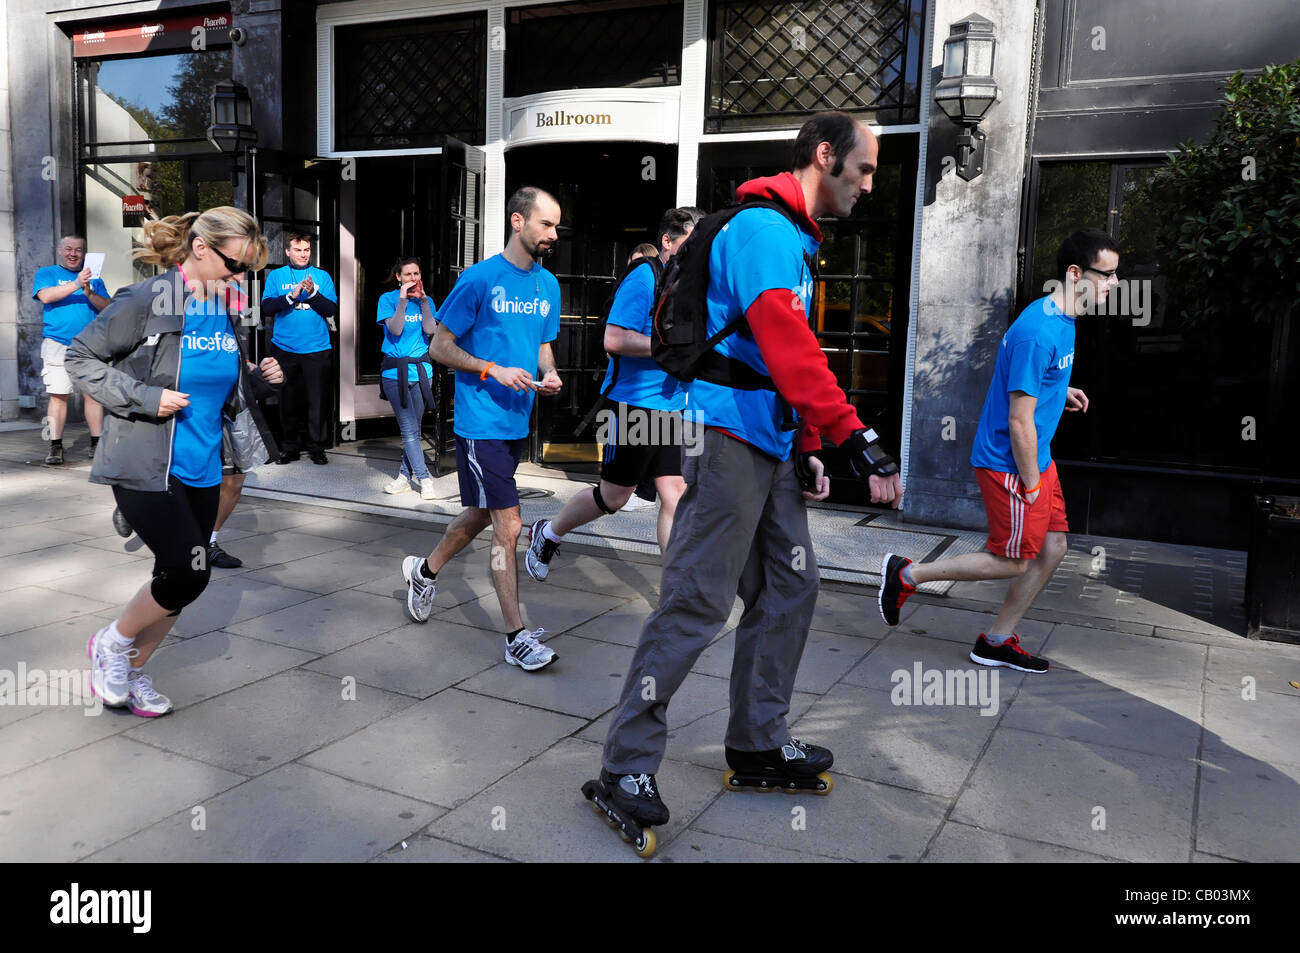 LONDON, UK, Samstag, 12. Mai 2012. Mitarbeiter und Führungskräfte von Starwood London Hotels im Zentrum laufen, zu Fuß oder mit dem Fahrrad eine halbe Marathon oder volle Marathon um Geld für UNICEF zu sammeln. Ziel war es, mindestens 5000 Pfund für ein UNICEF-Bildungsprogramm in Äthiopien zu erhöhen. Stockfoto